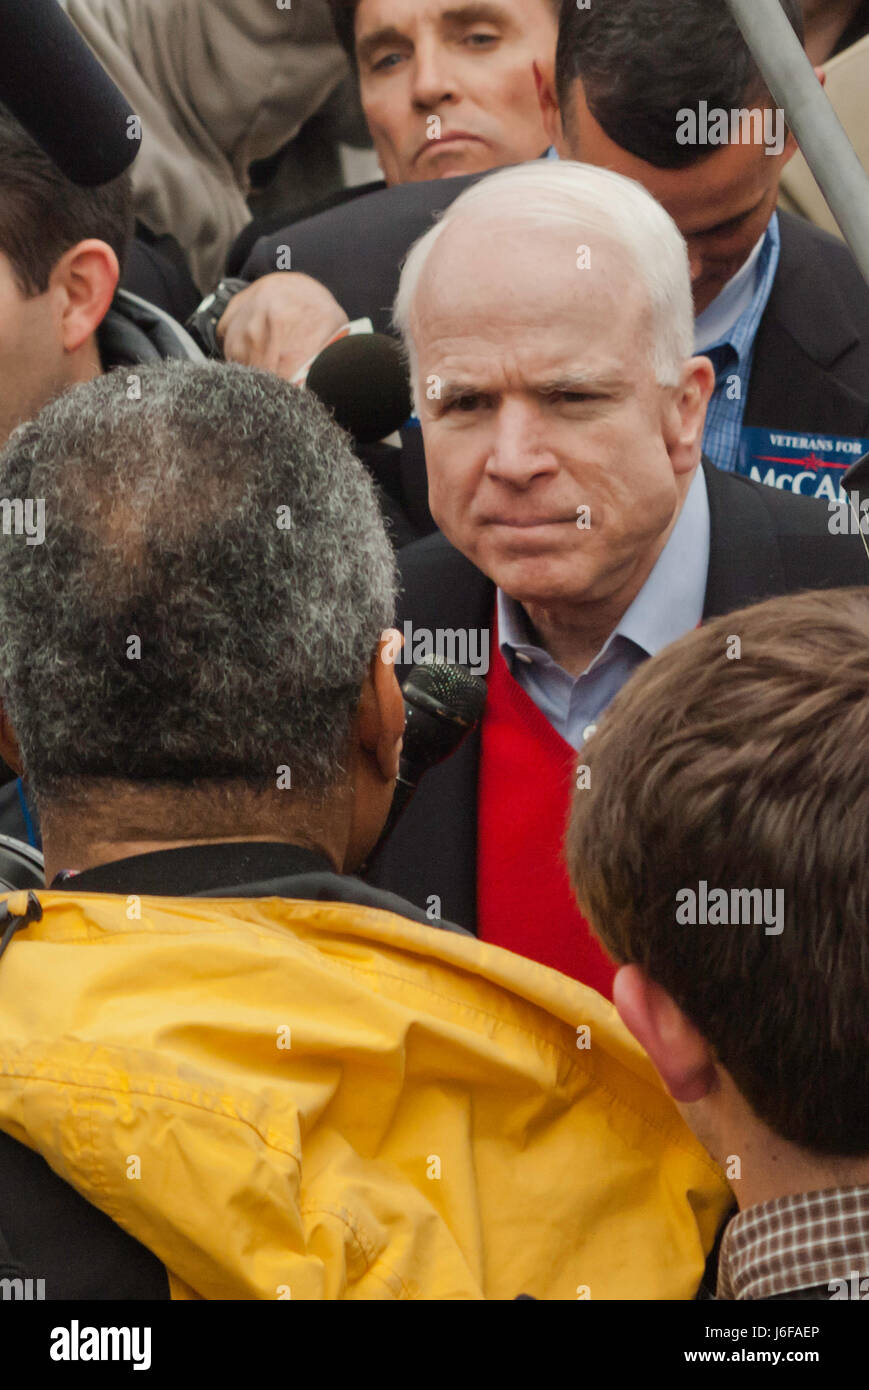 KEENE, NH/US - 7 janvier 2008 : Le sénateur américain John McCain parle avec des partisans à une piscine rallye sur la dernière journée avant le 2008 NH primaire. Banque D'Images